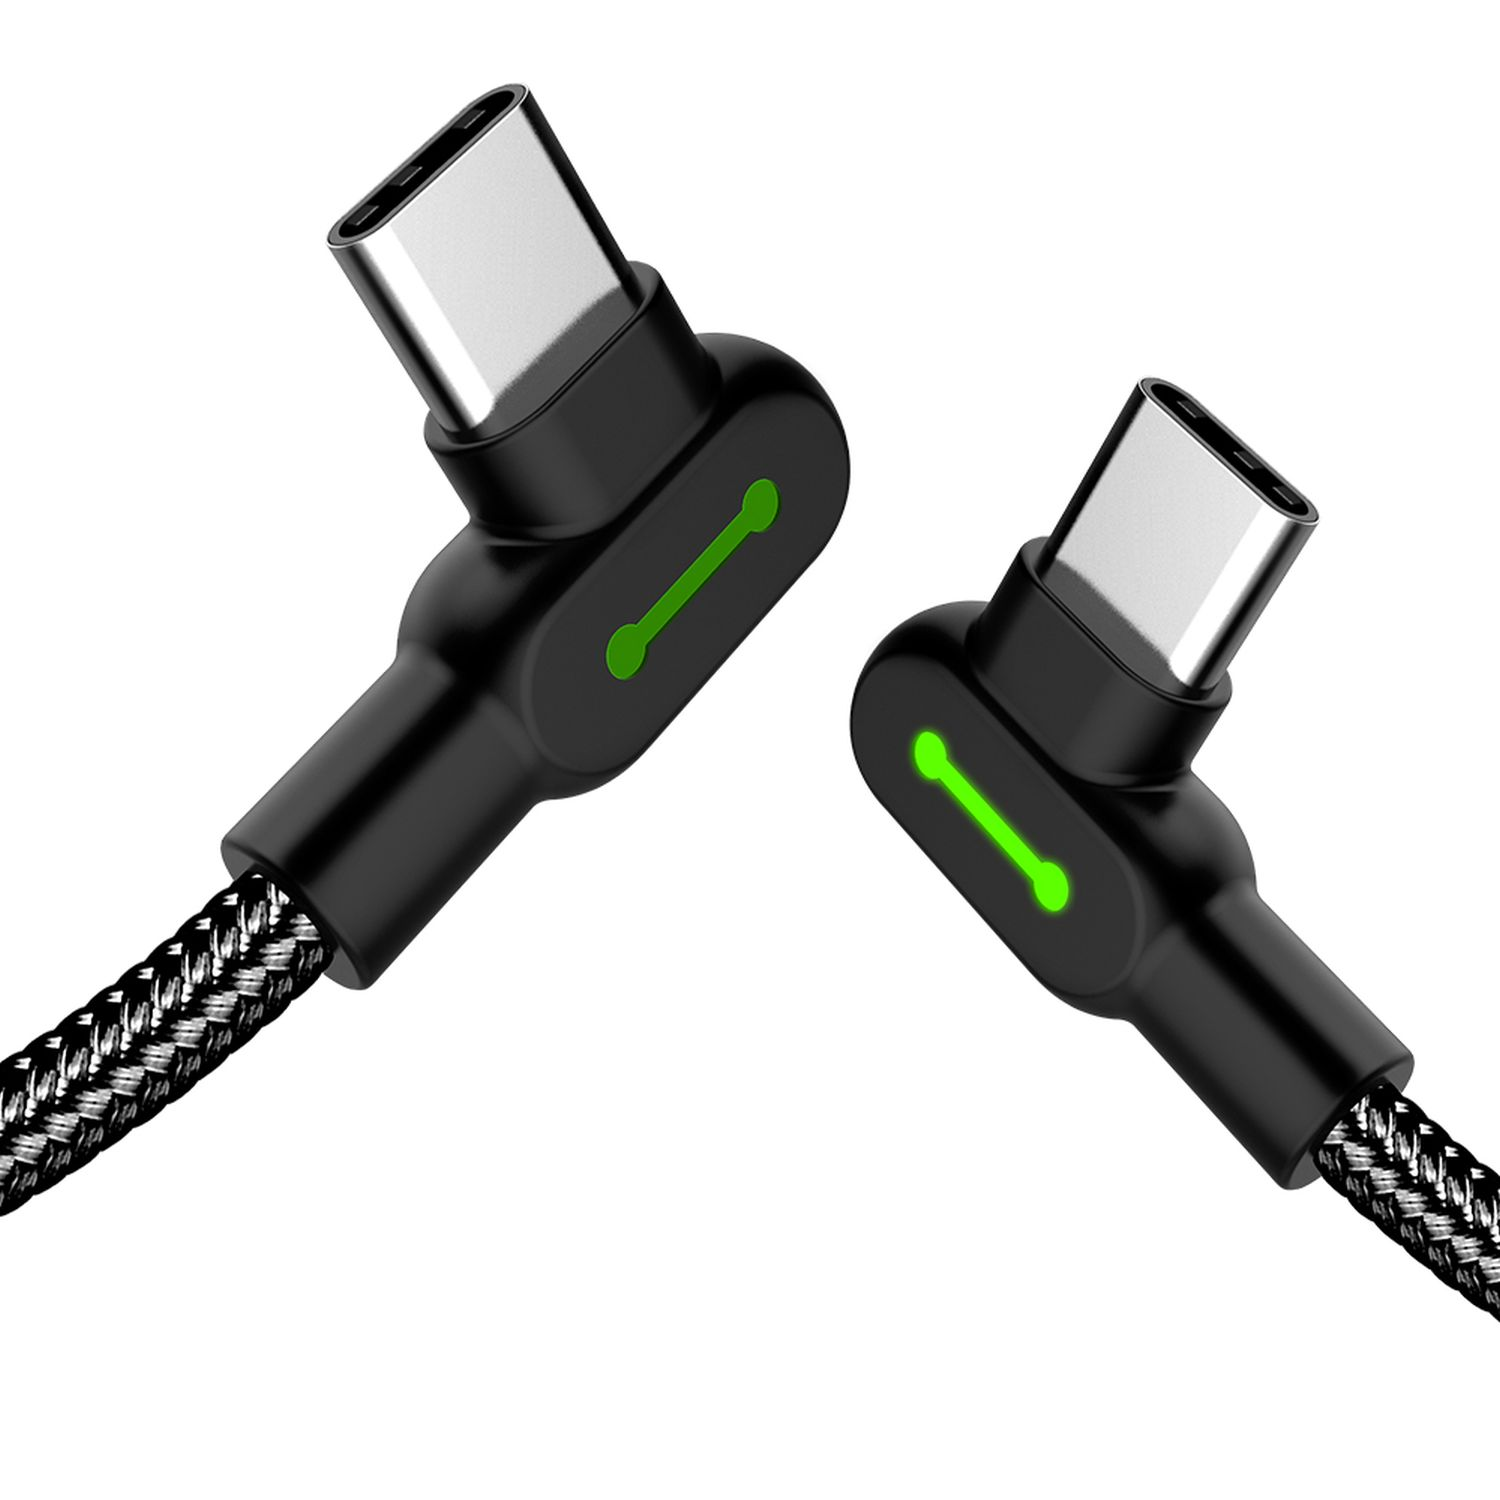 MCDODO 1,8m 90° L-Form auf Schwarz USB-A Ladekabel, Datenkabel, USB C geflochten Typ